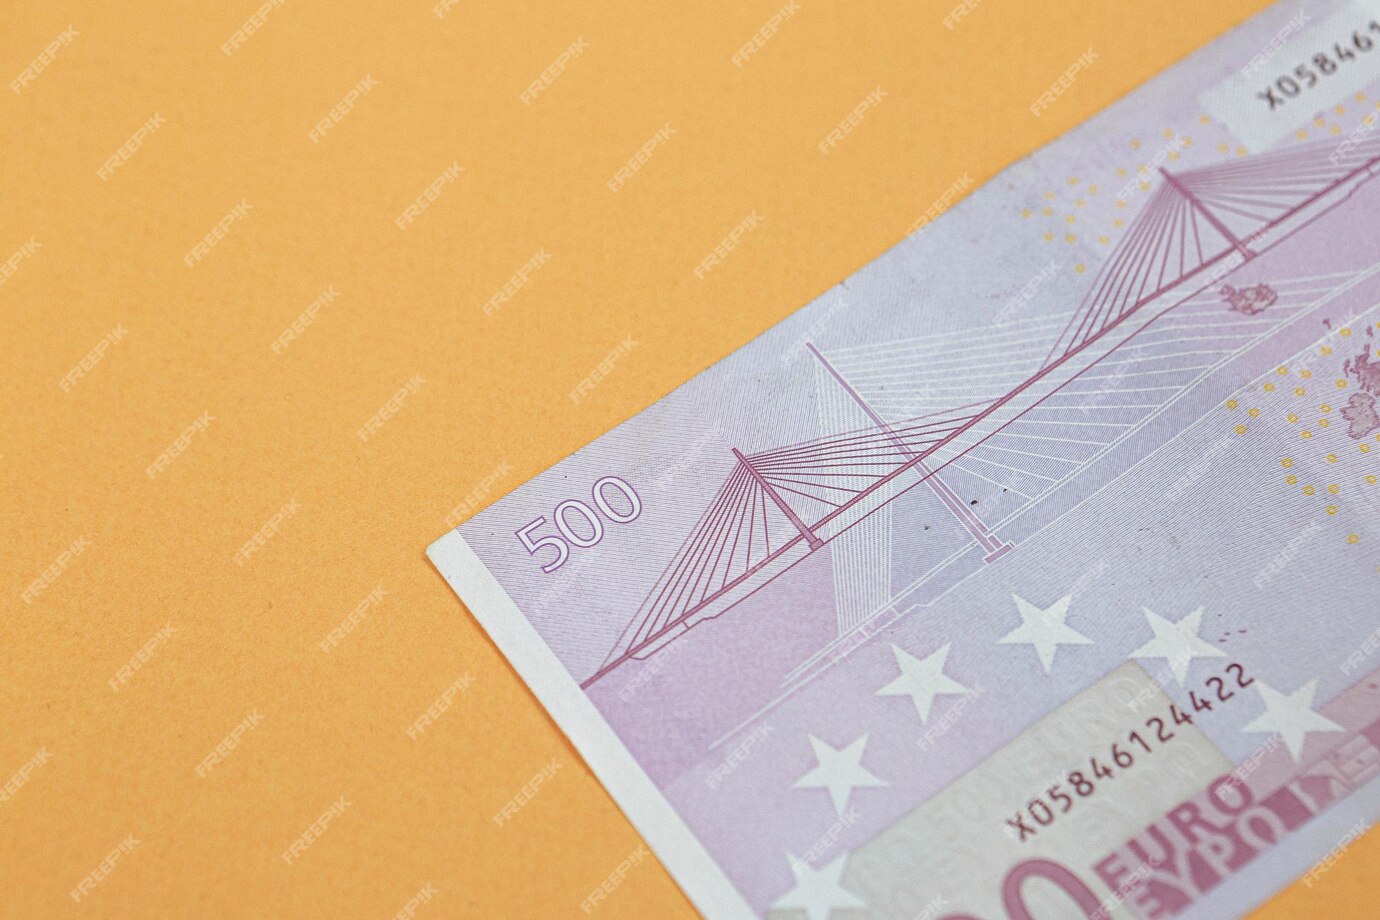 eura bankovka